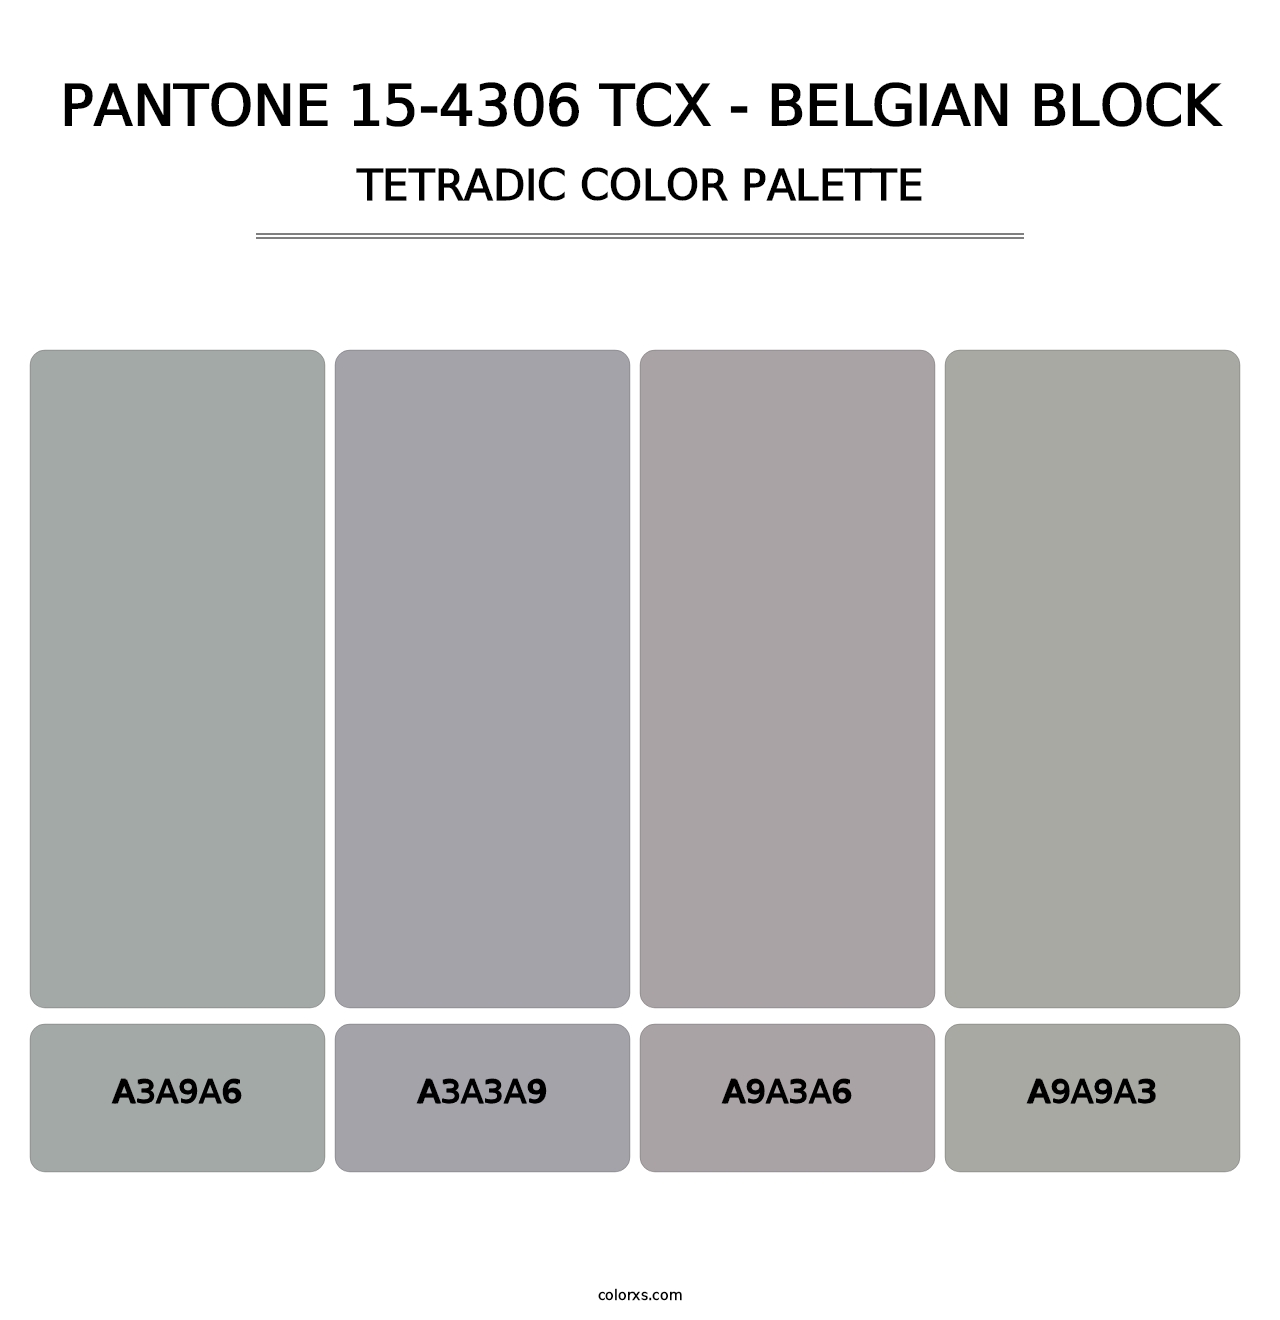 PANTONE 15-4306 TCX - Belgian Block - Tetradic Color Palette